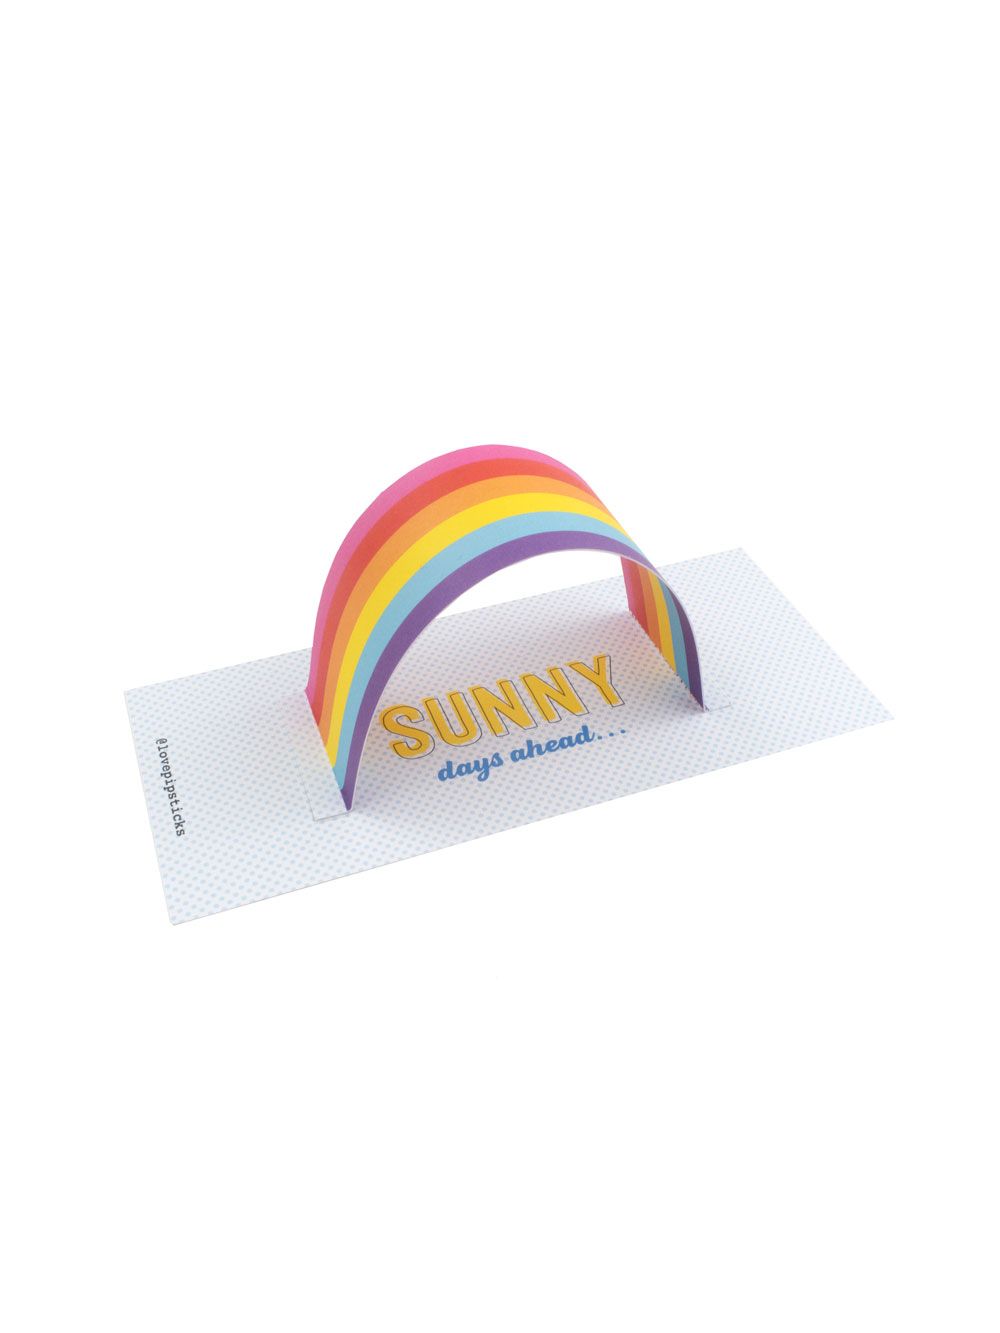 Sunny Days Ahead Rainbow Maker Notecard Pack